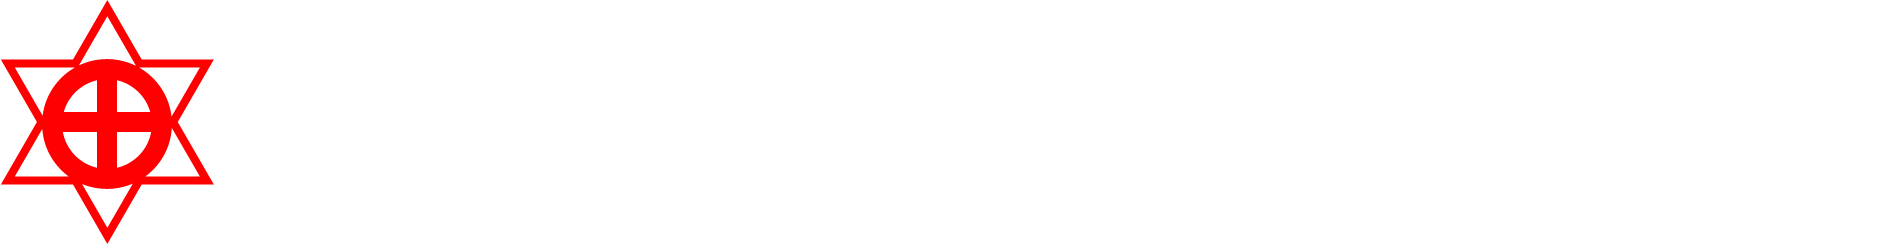 矢田金属工業株式会社